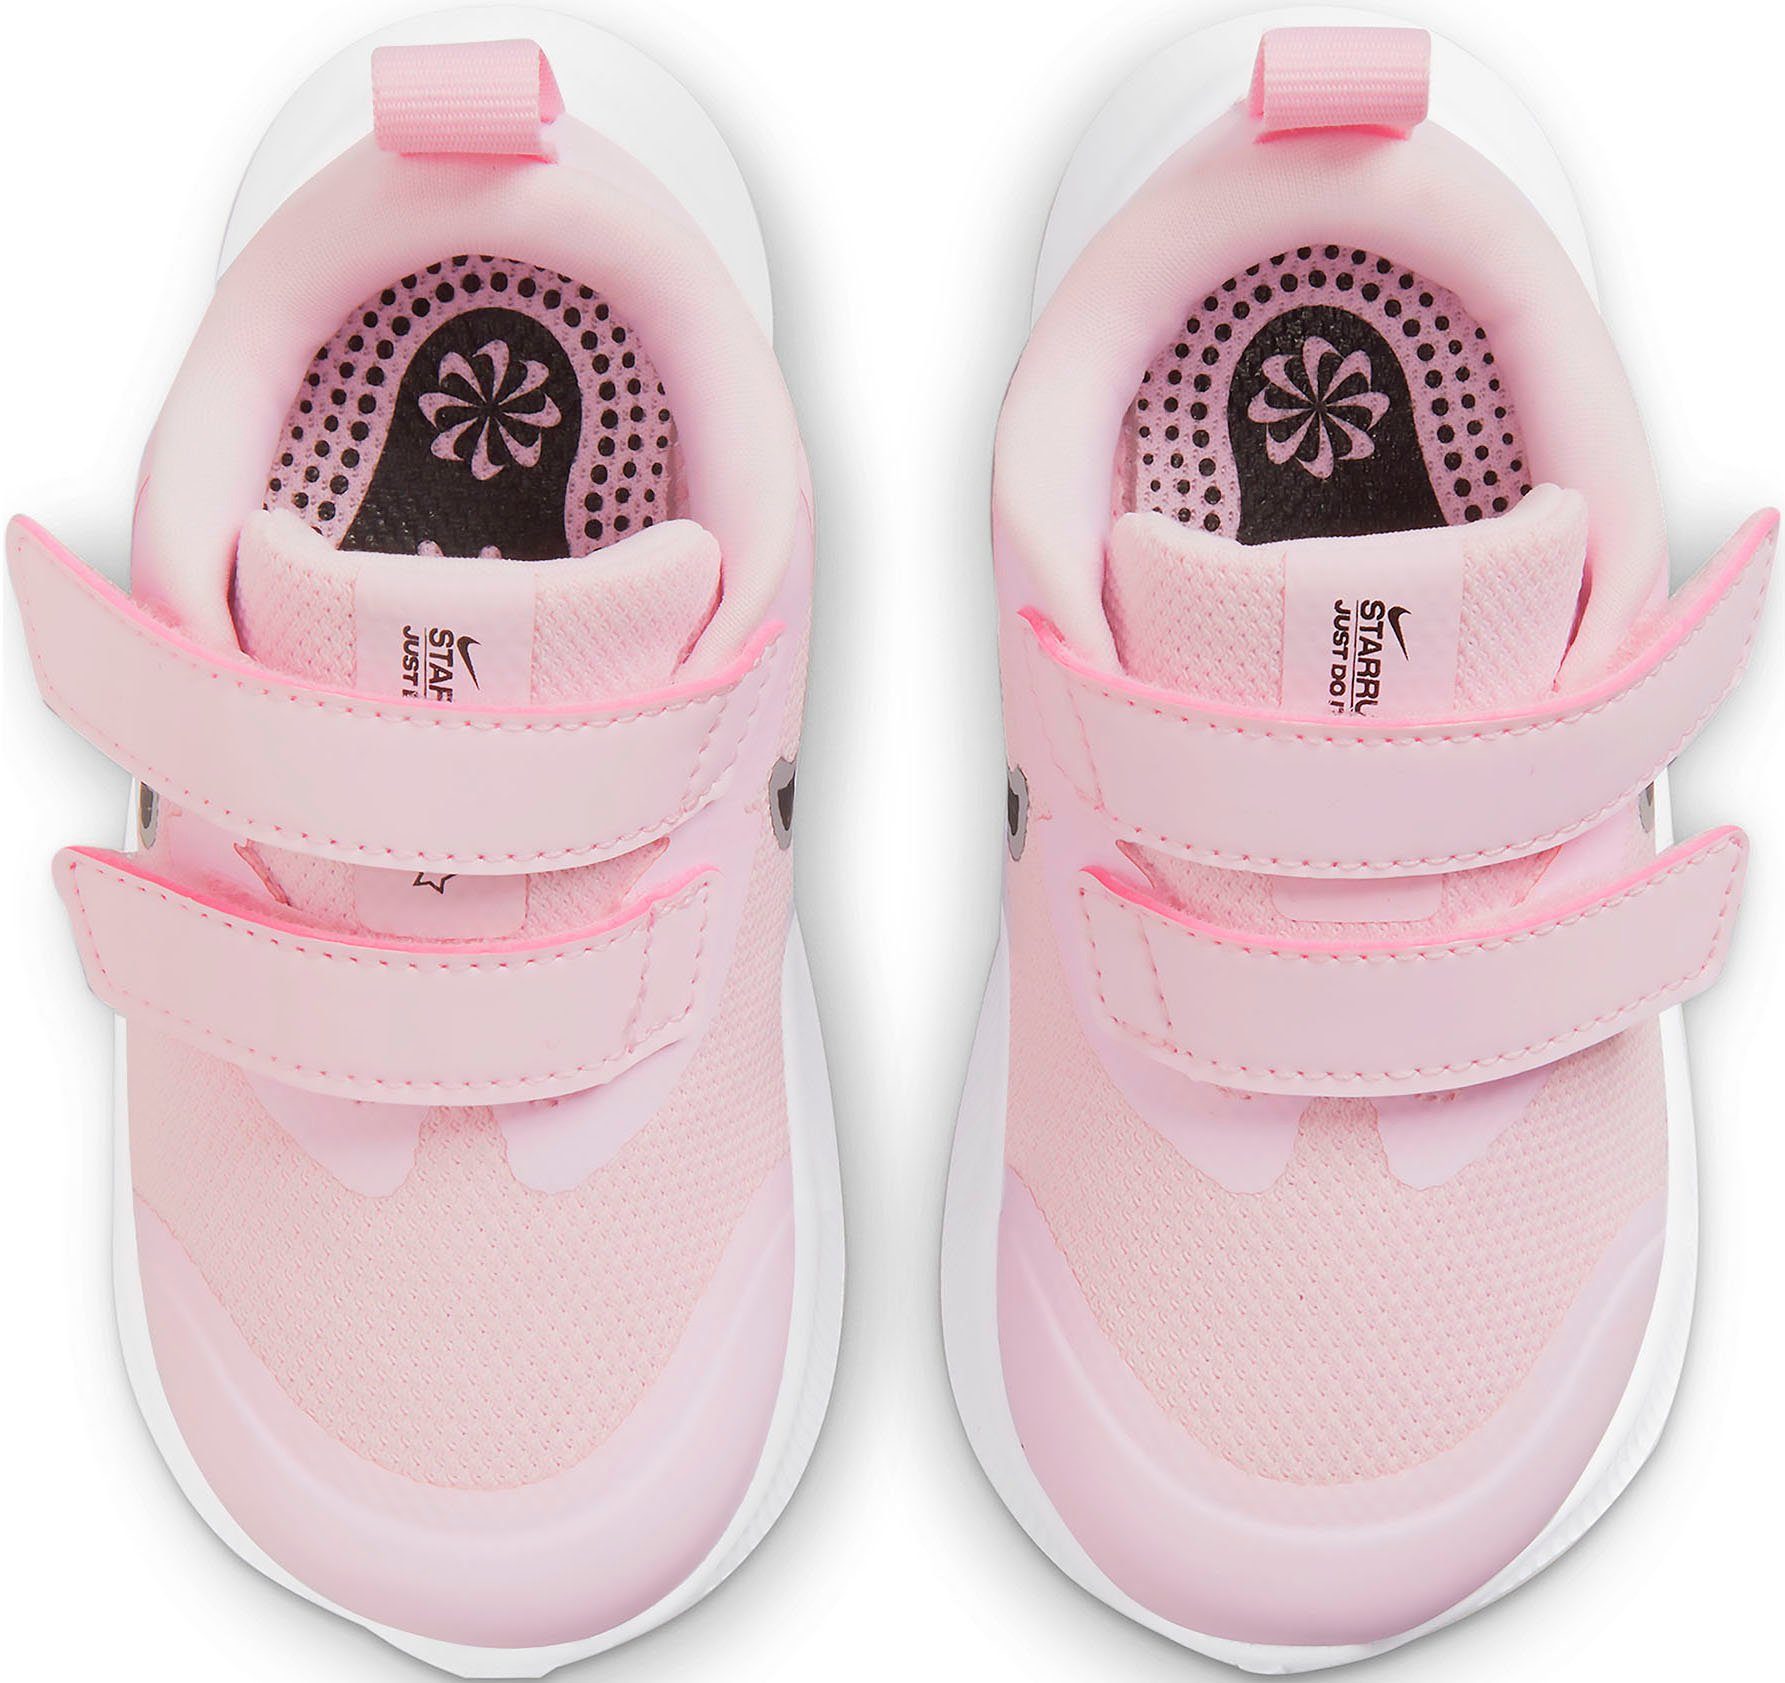 Nike RUNNER Klettverschluss Laufschuh pink (TD) mit 3 STAR